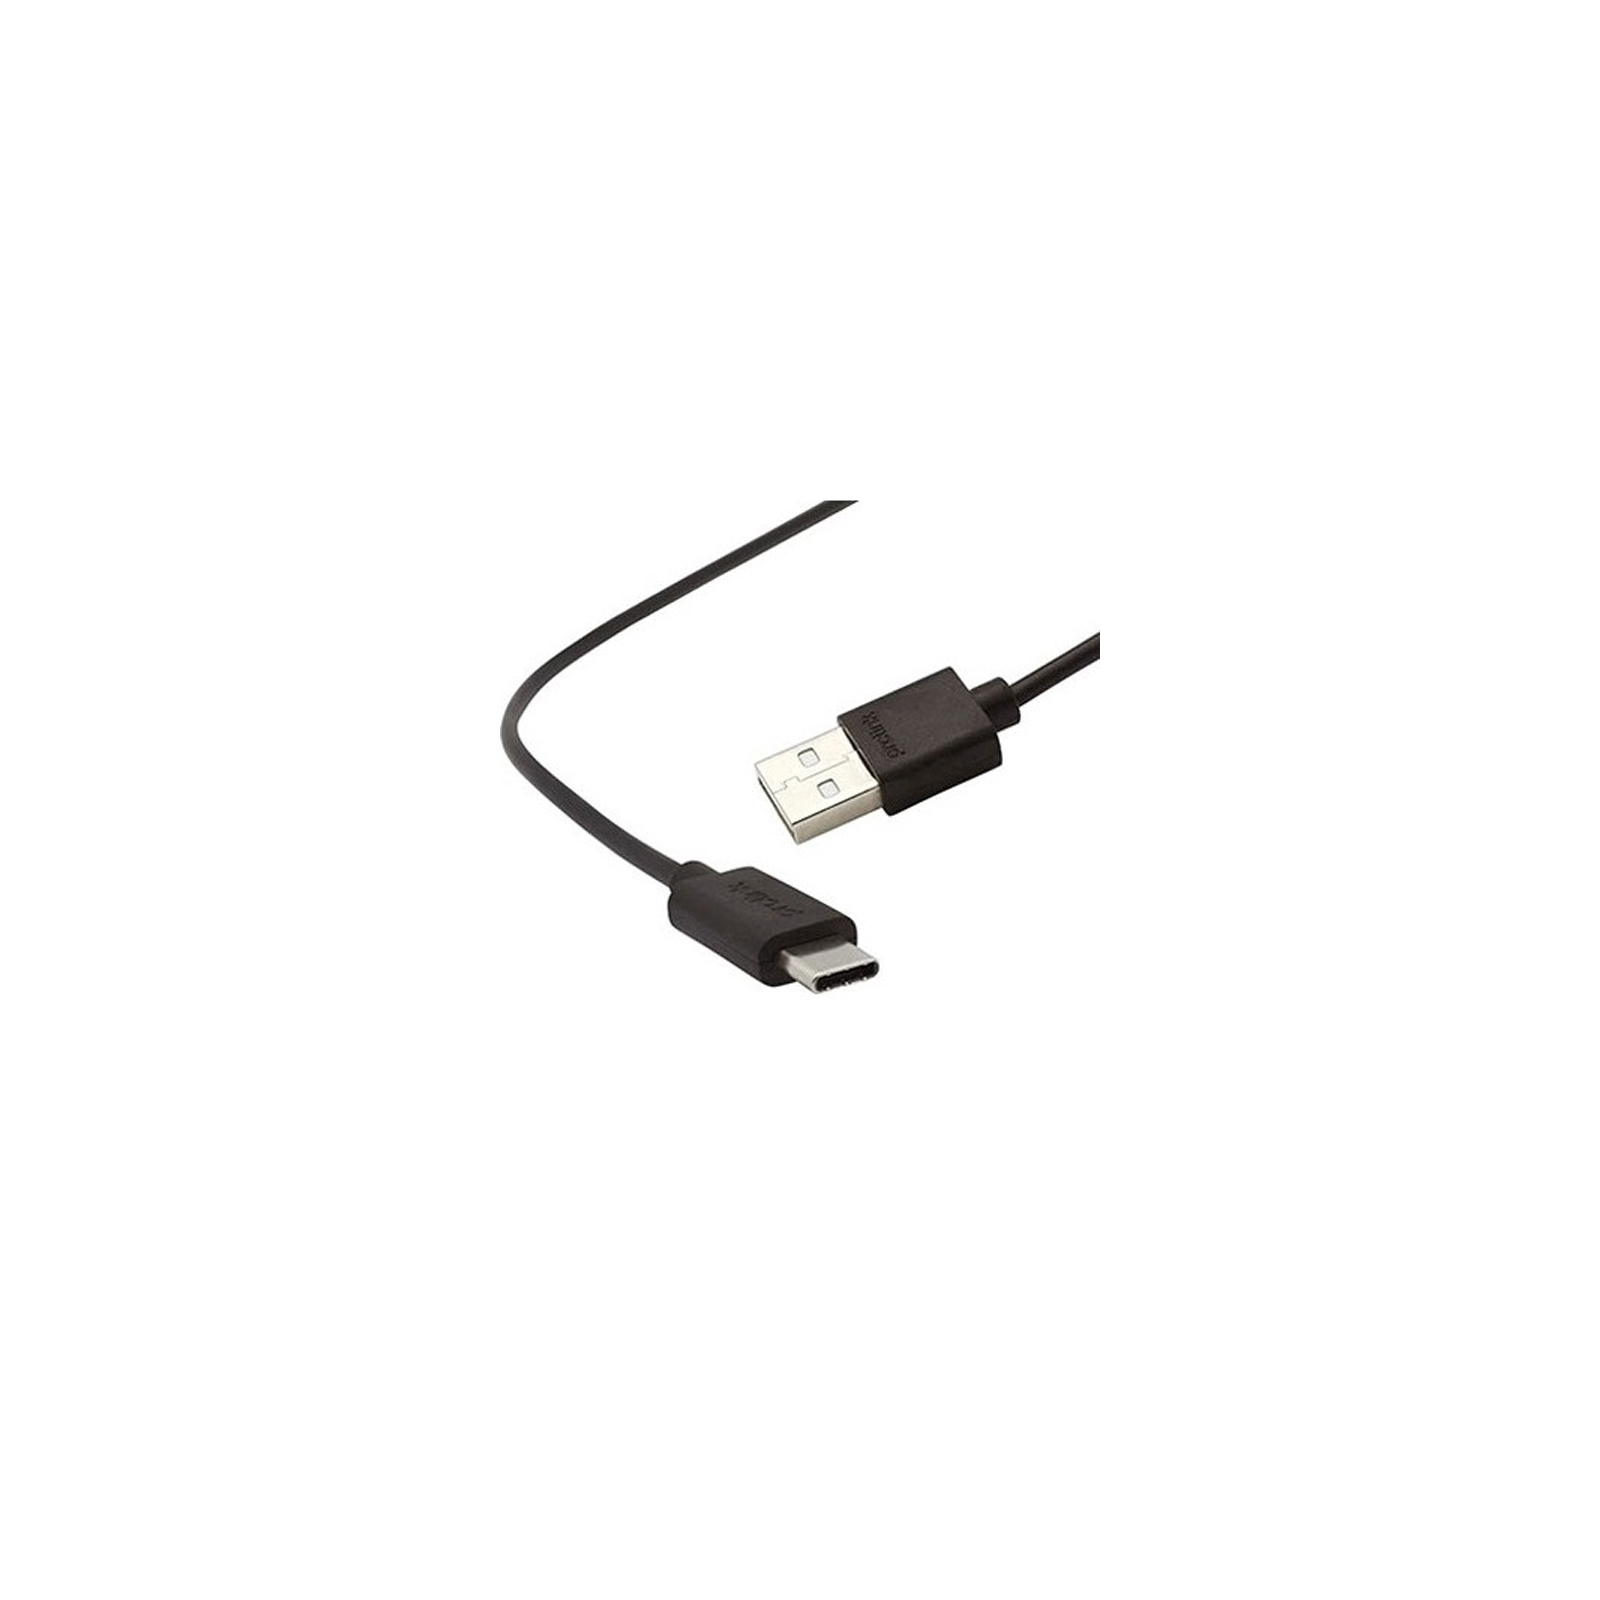 Дата кабель USB 2.0 AM to Type-C 1.0m Prolink (PL495-0100)